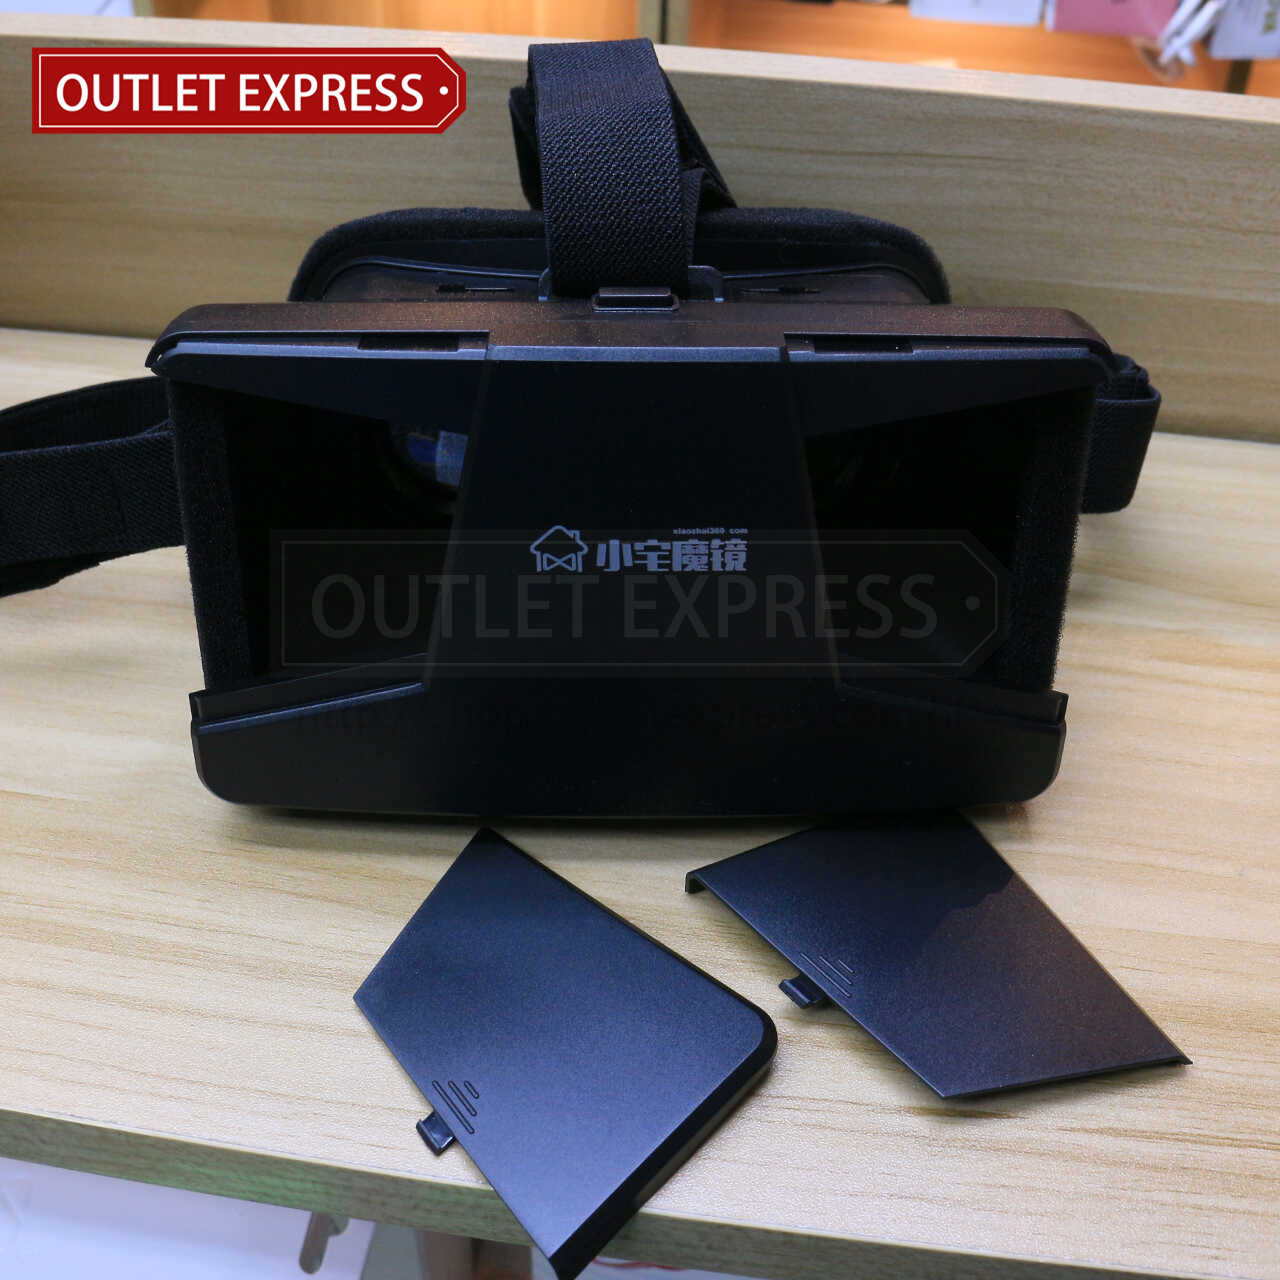 小宅魔鏡一代  VR虛擬實境眼鏡- Outlet Express HK生活百貨城實拍相片